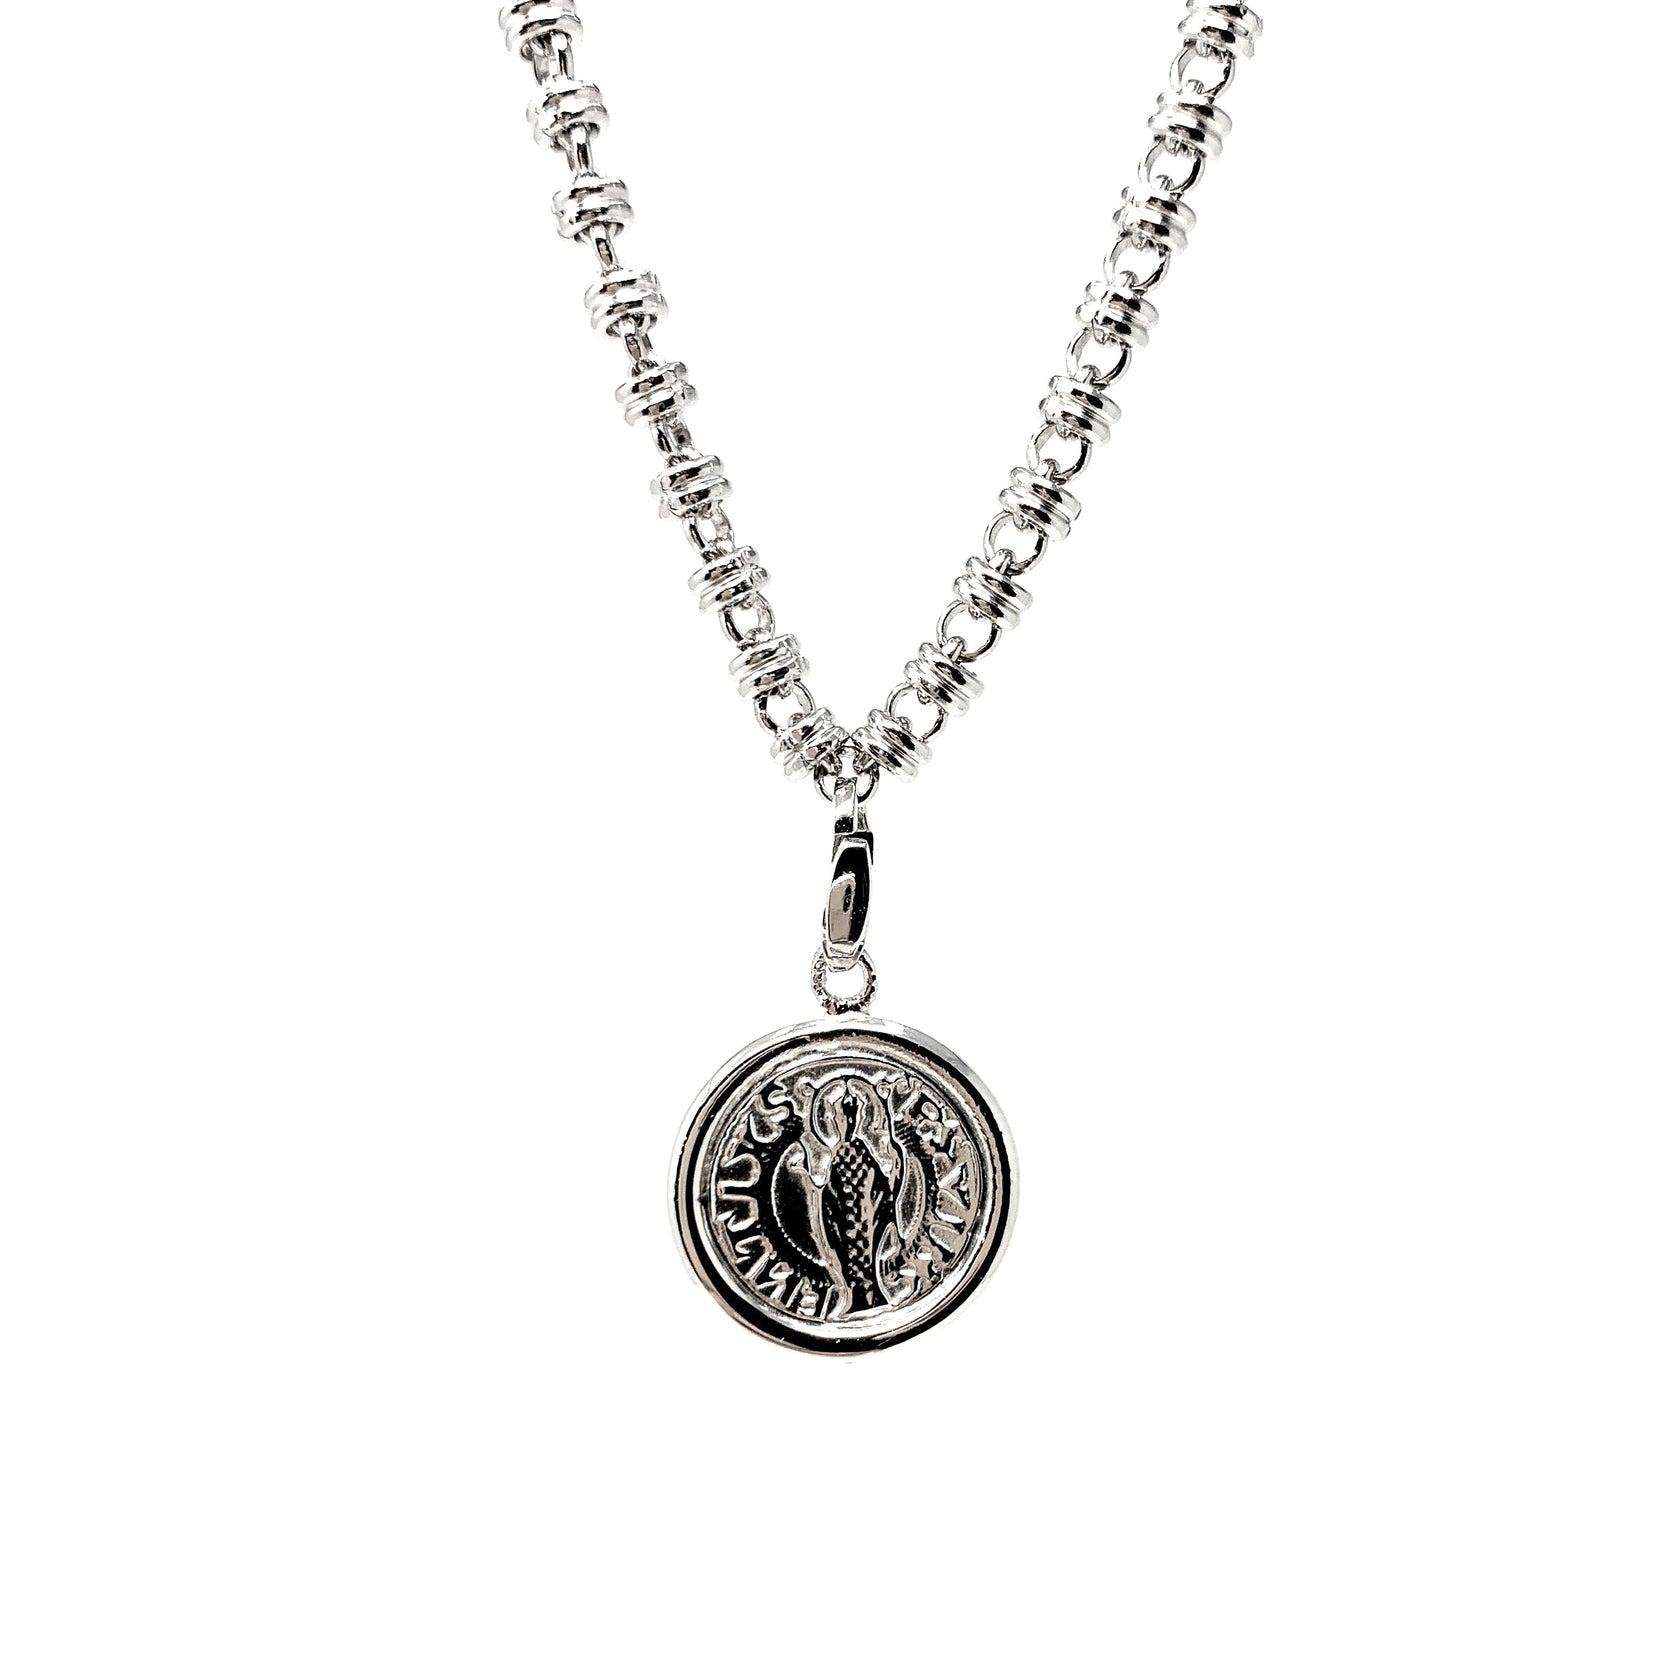 Cortona Coin Charm in Silver